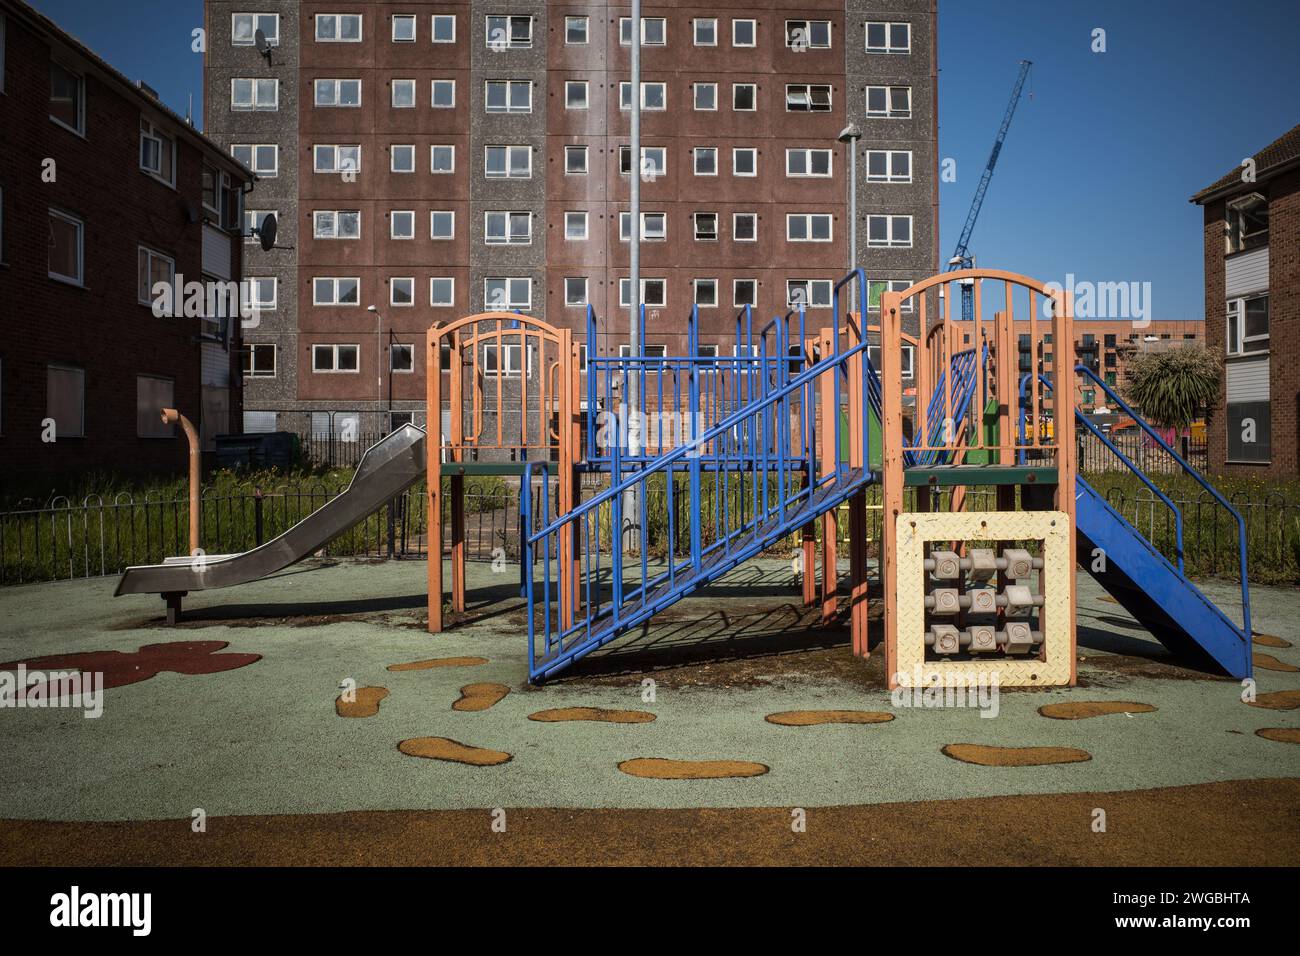 Parc de jeux pour enfants est vide dans le domaine Gascoigne qui est actuellement en cours de réaménagement. Délabré, embarqué dans un logement en arrière-plan. Banque D'Images